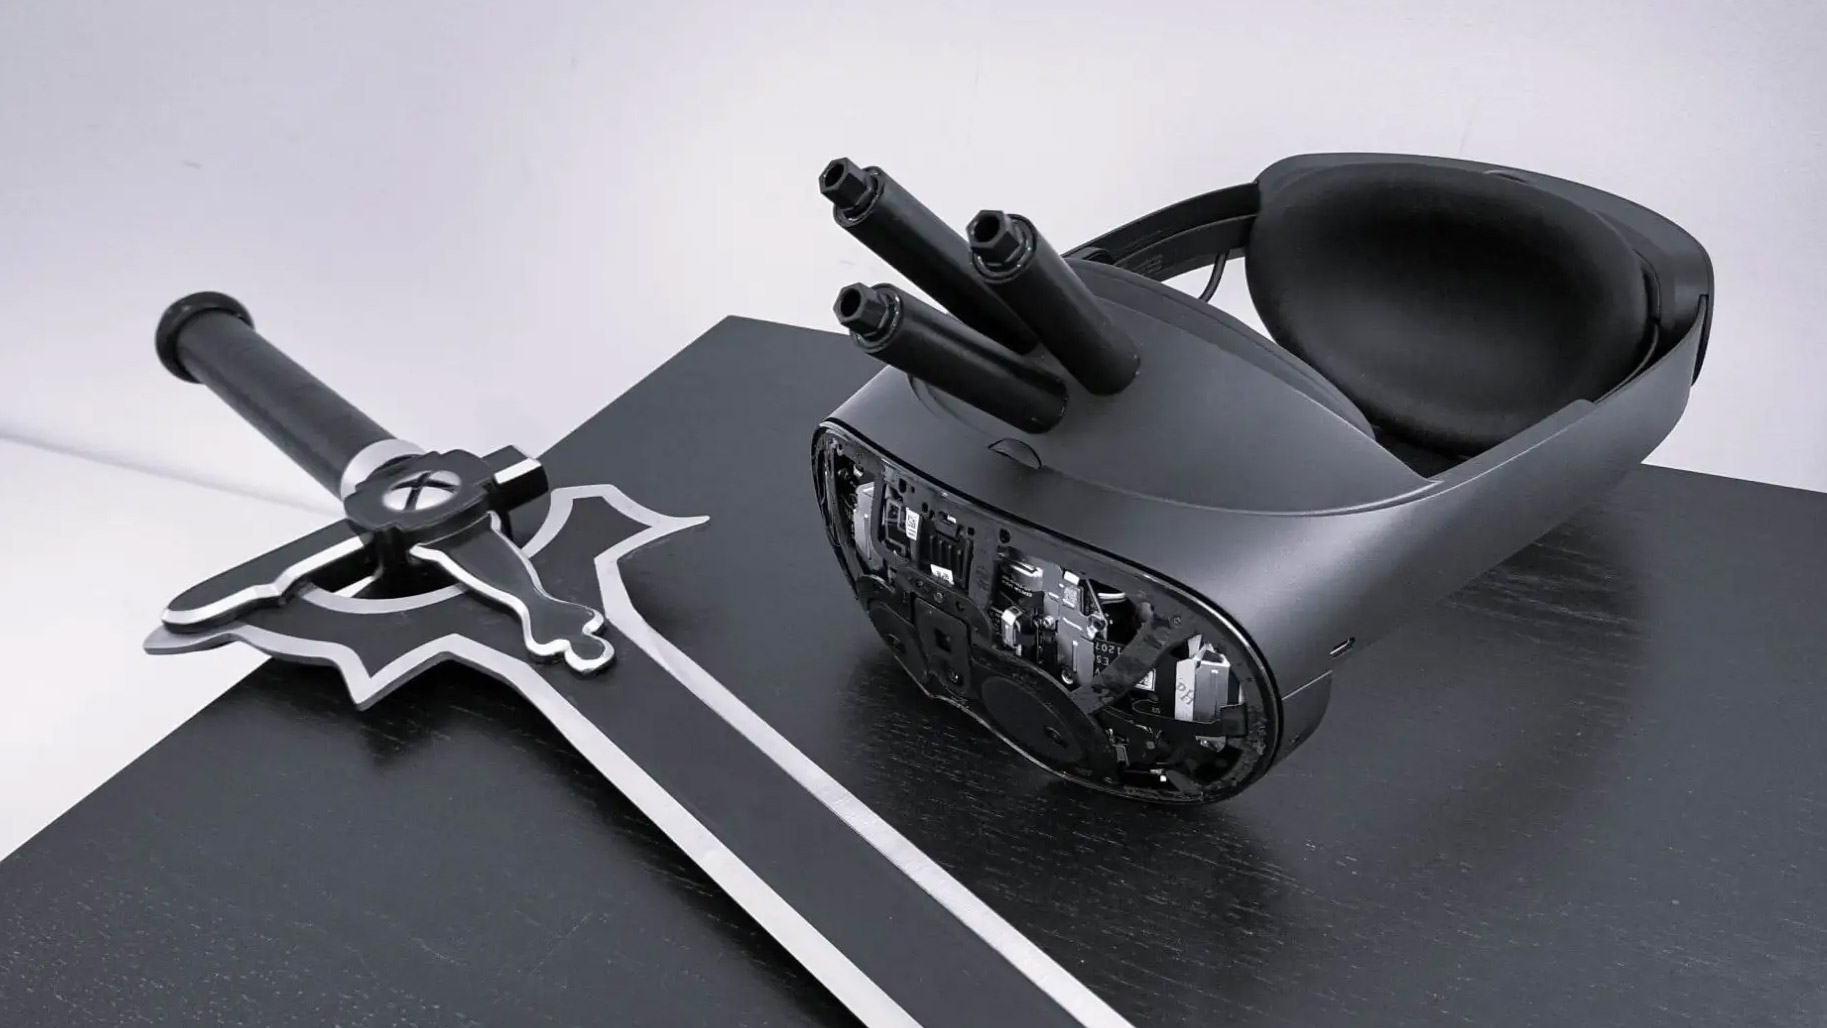 Te gogle VR zabiją Cię, jeśli umrzesz w wirtualnym świecie. Dosłownie eksplodują!